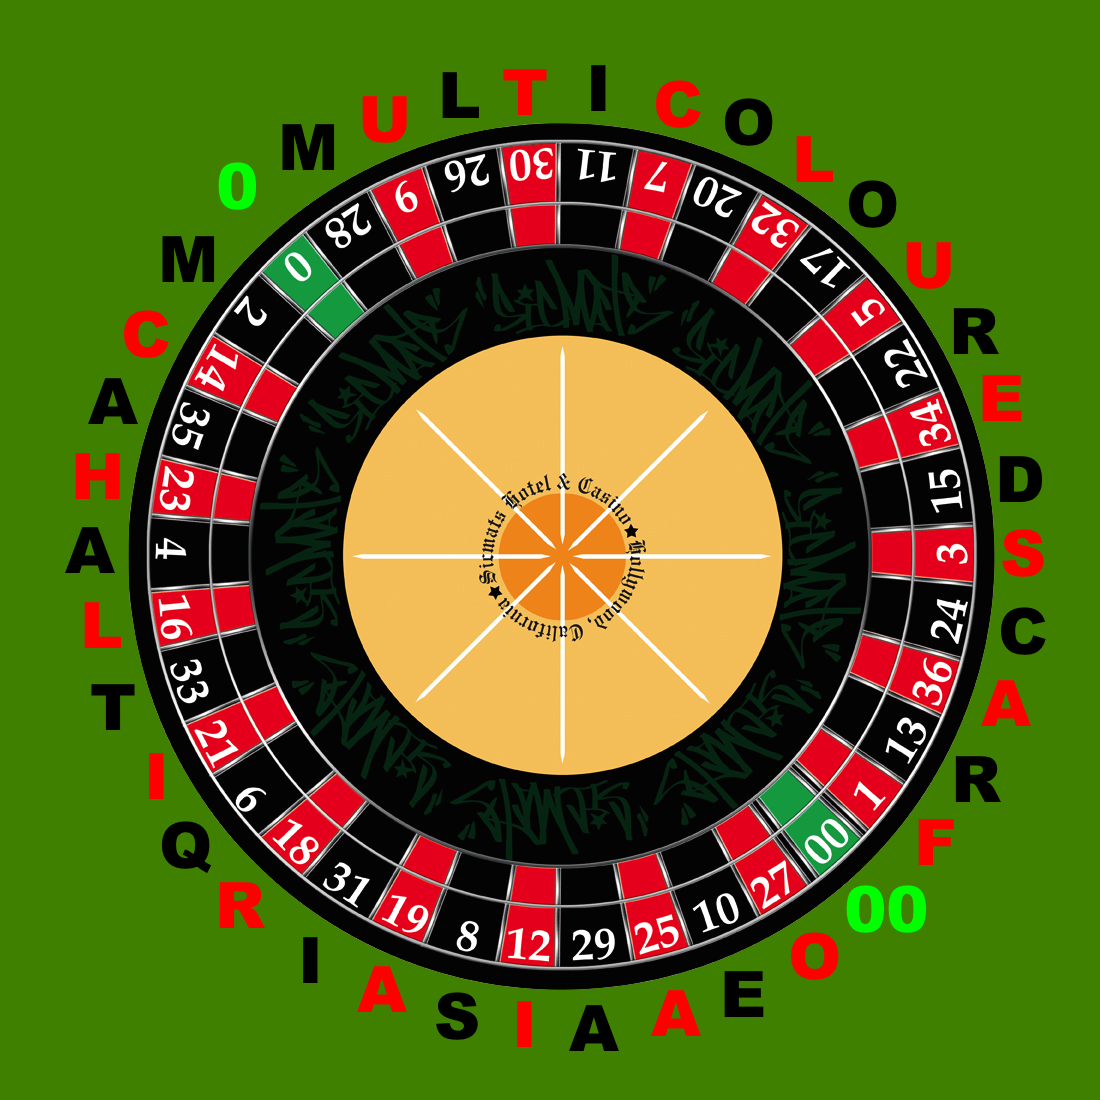 Crossword Roulette Double Doubling Down in Blackjack